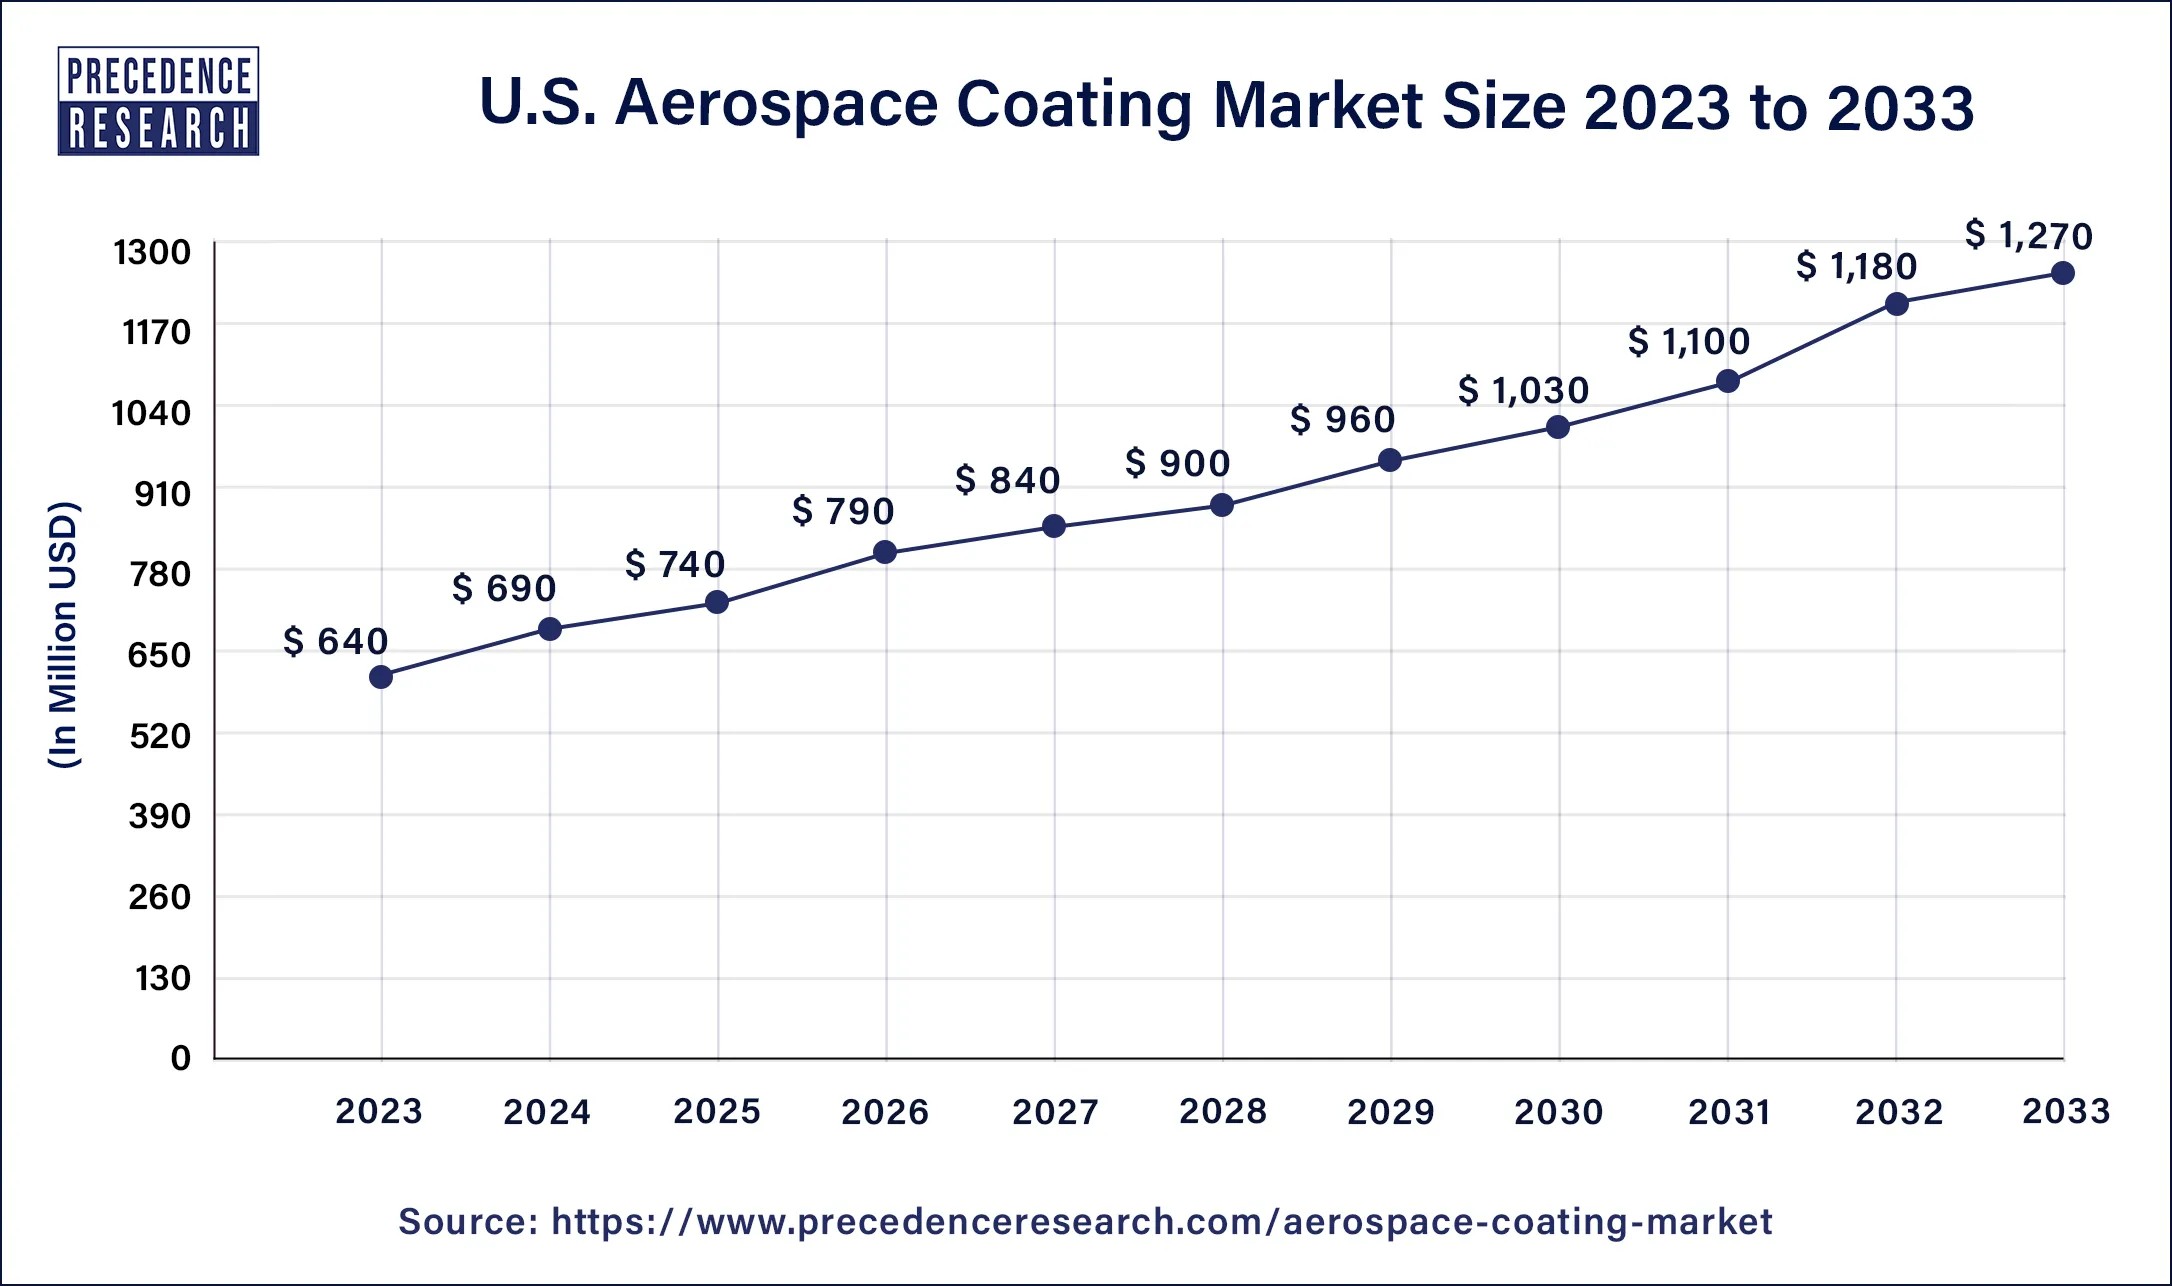 U.S Aerospace Coating Market Size 2024 to 2033